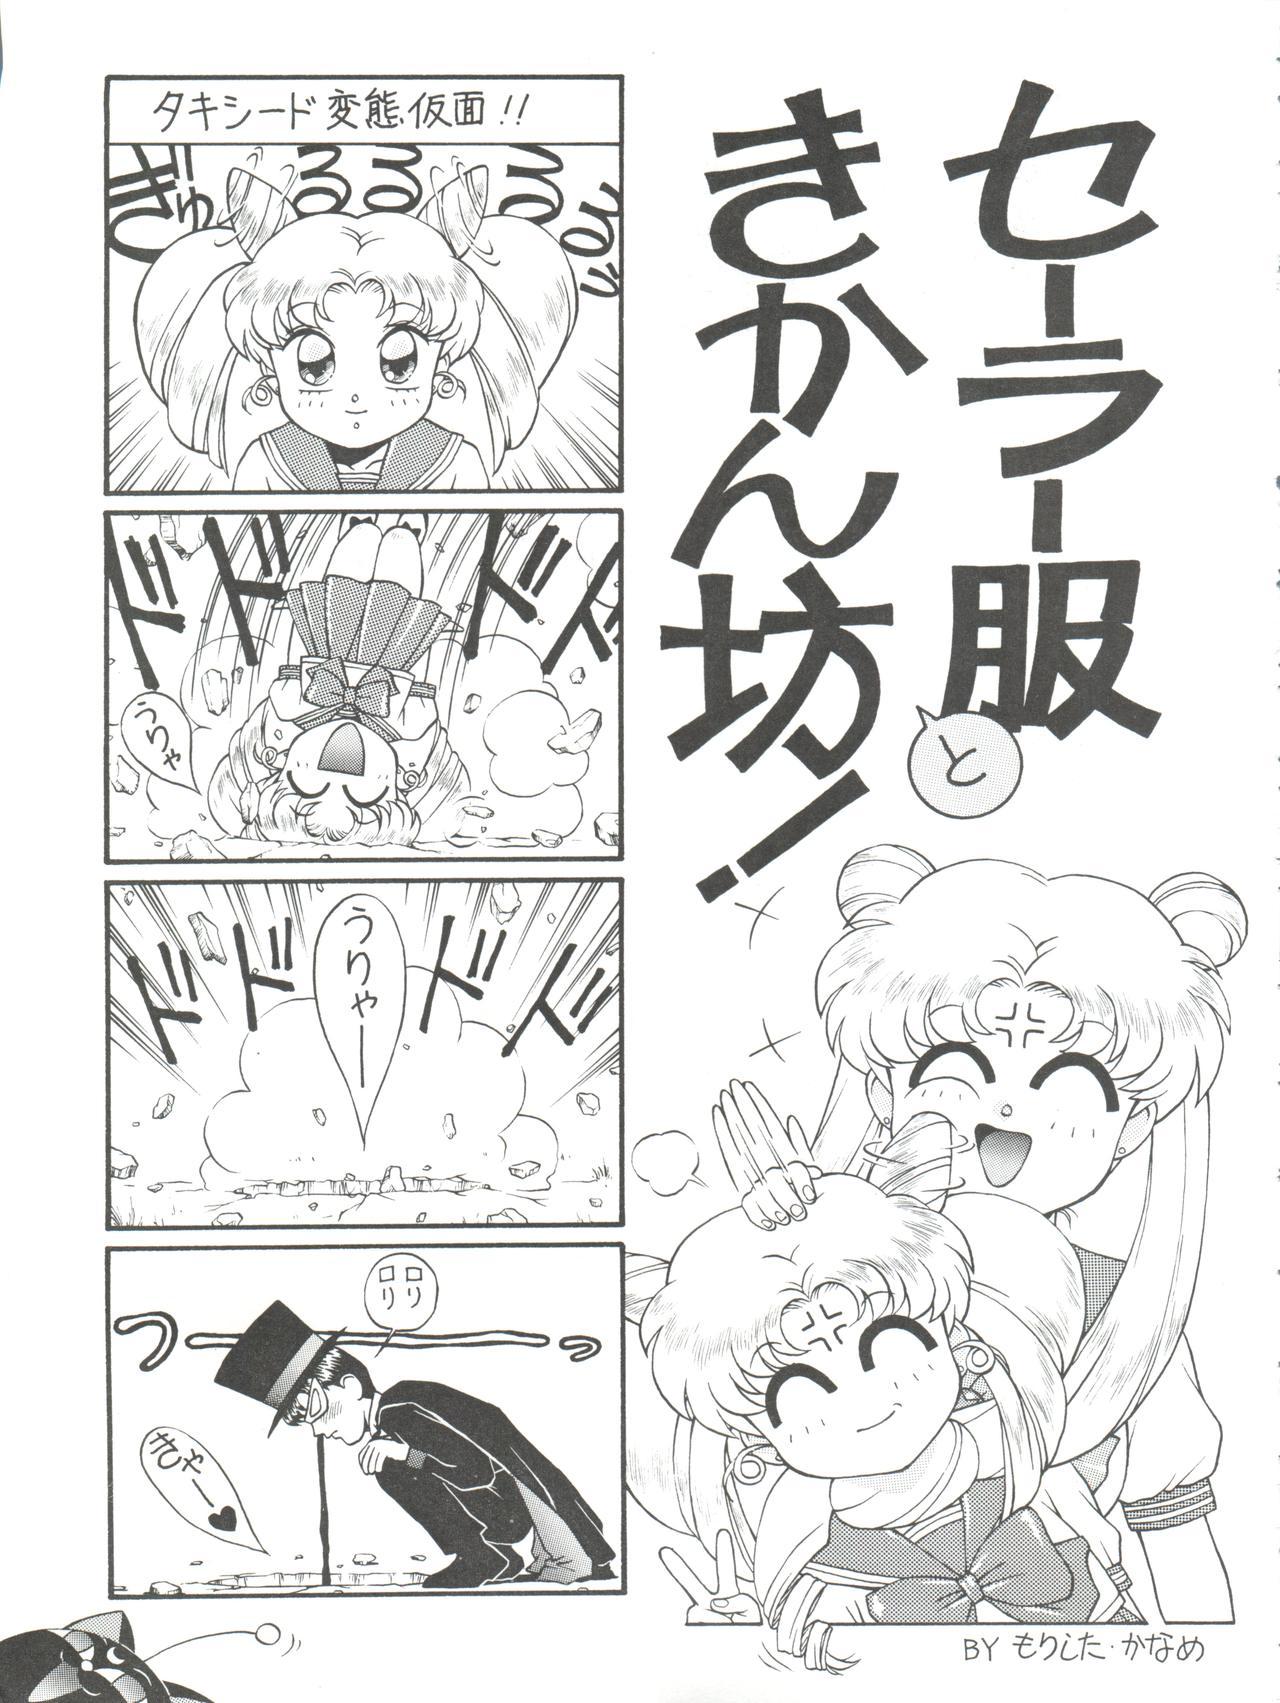 Chacal NANIWA-YA FINAL DRESS UP! - Sailor moon Slayers Hime-chans ribbon Ng knight lamune and 40 Brave express might gaine Casting - Page 11